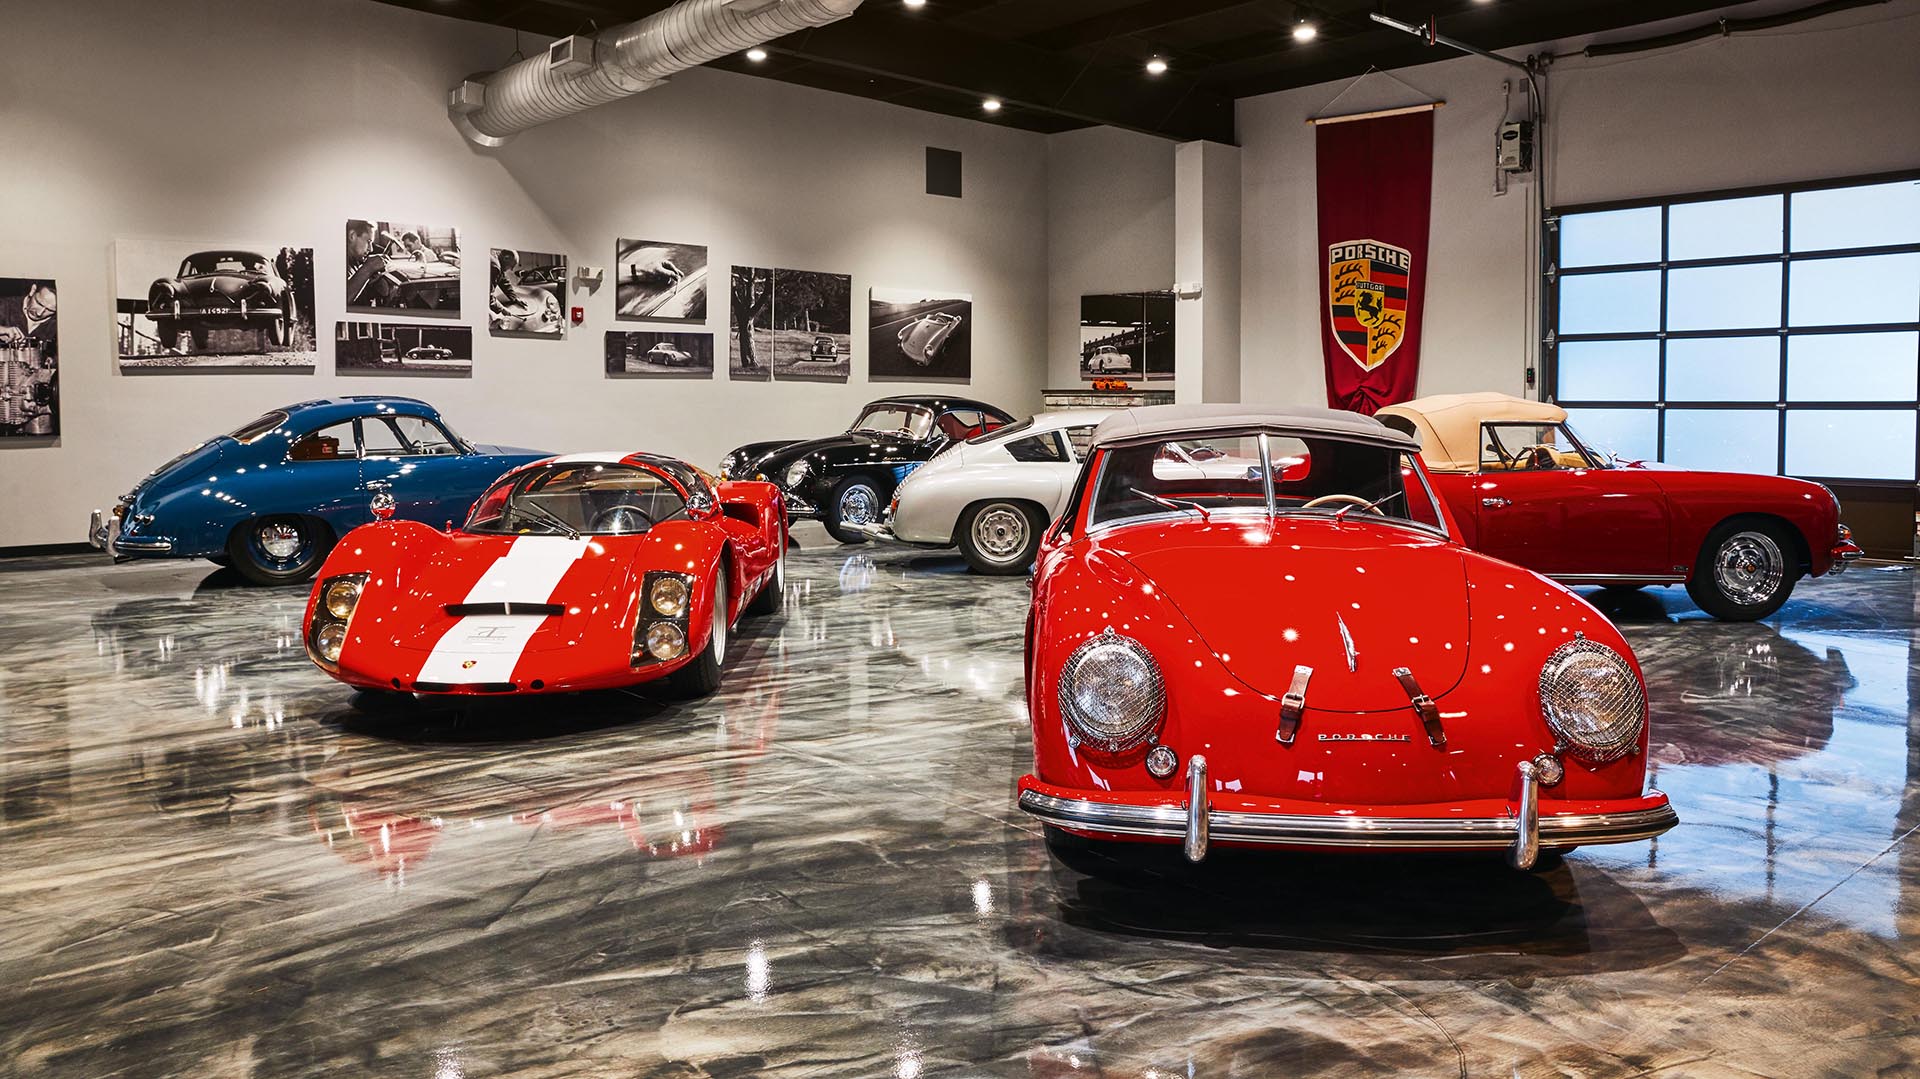 La colección tiene todo tipo de modelos, desde los más viejos hasta los más nuevos (Porsche)